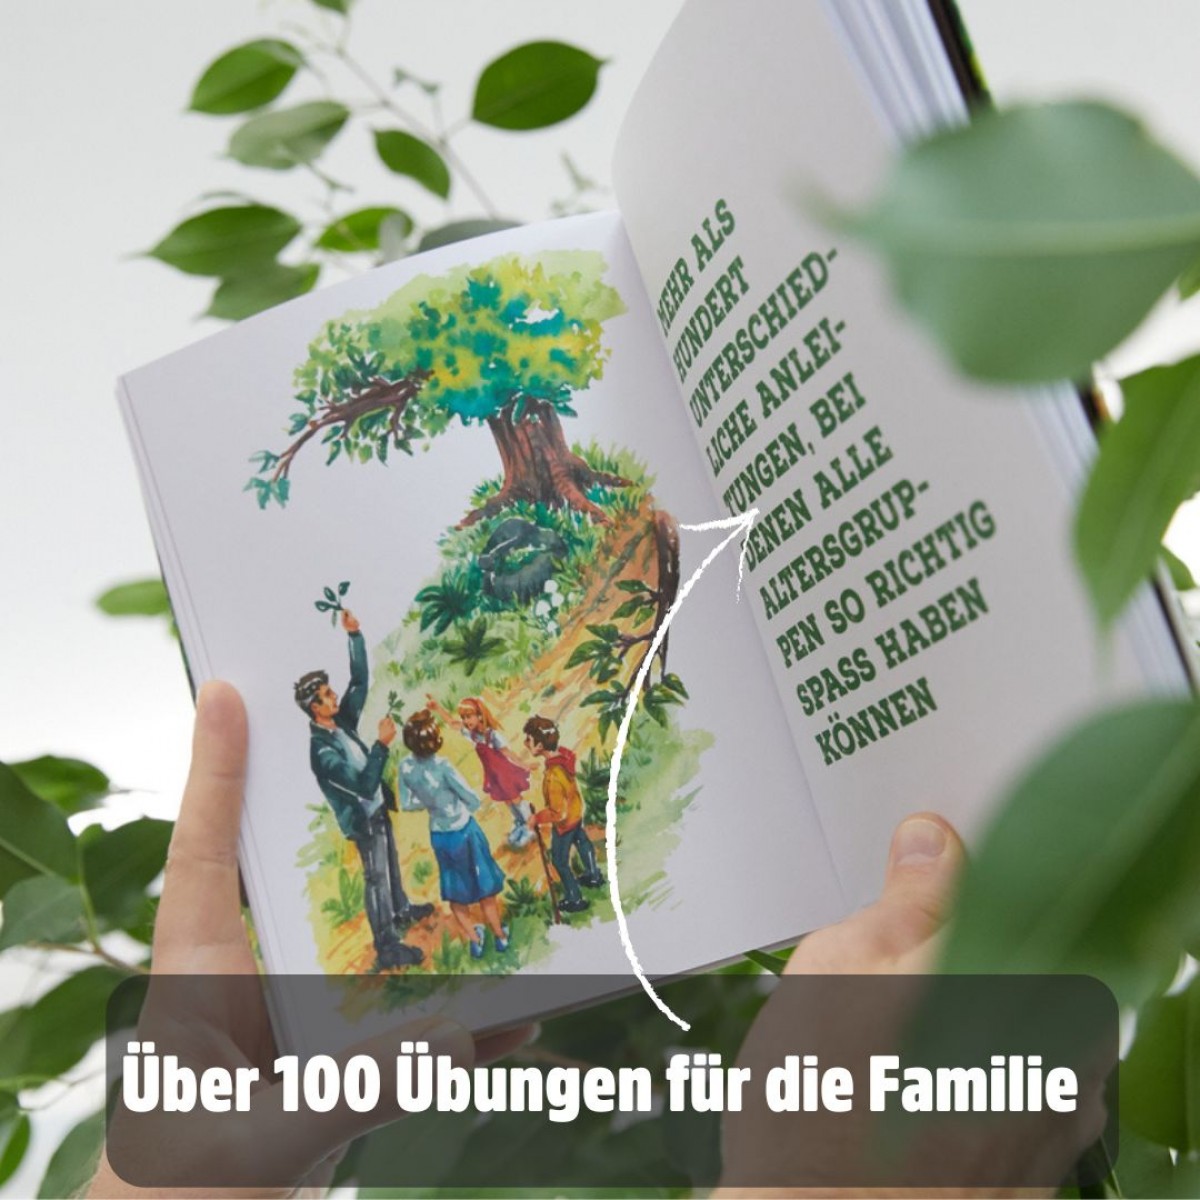 Wir lieben Waldbaden für Familien

Waldbaden-Wissen, Aufgaben und Erlebnistagebuch für die ganze Familie